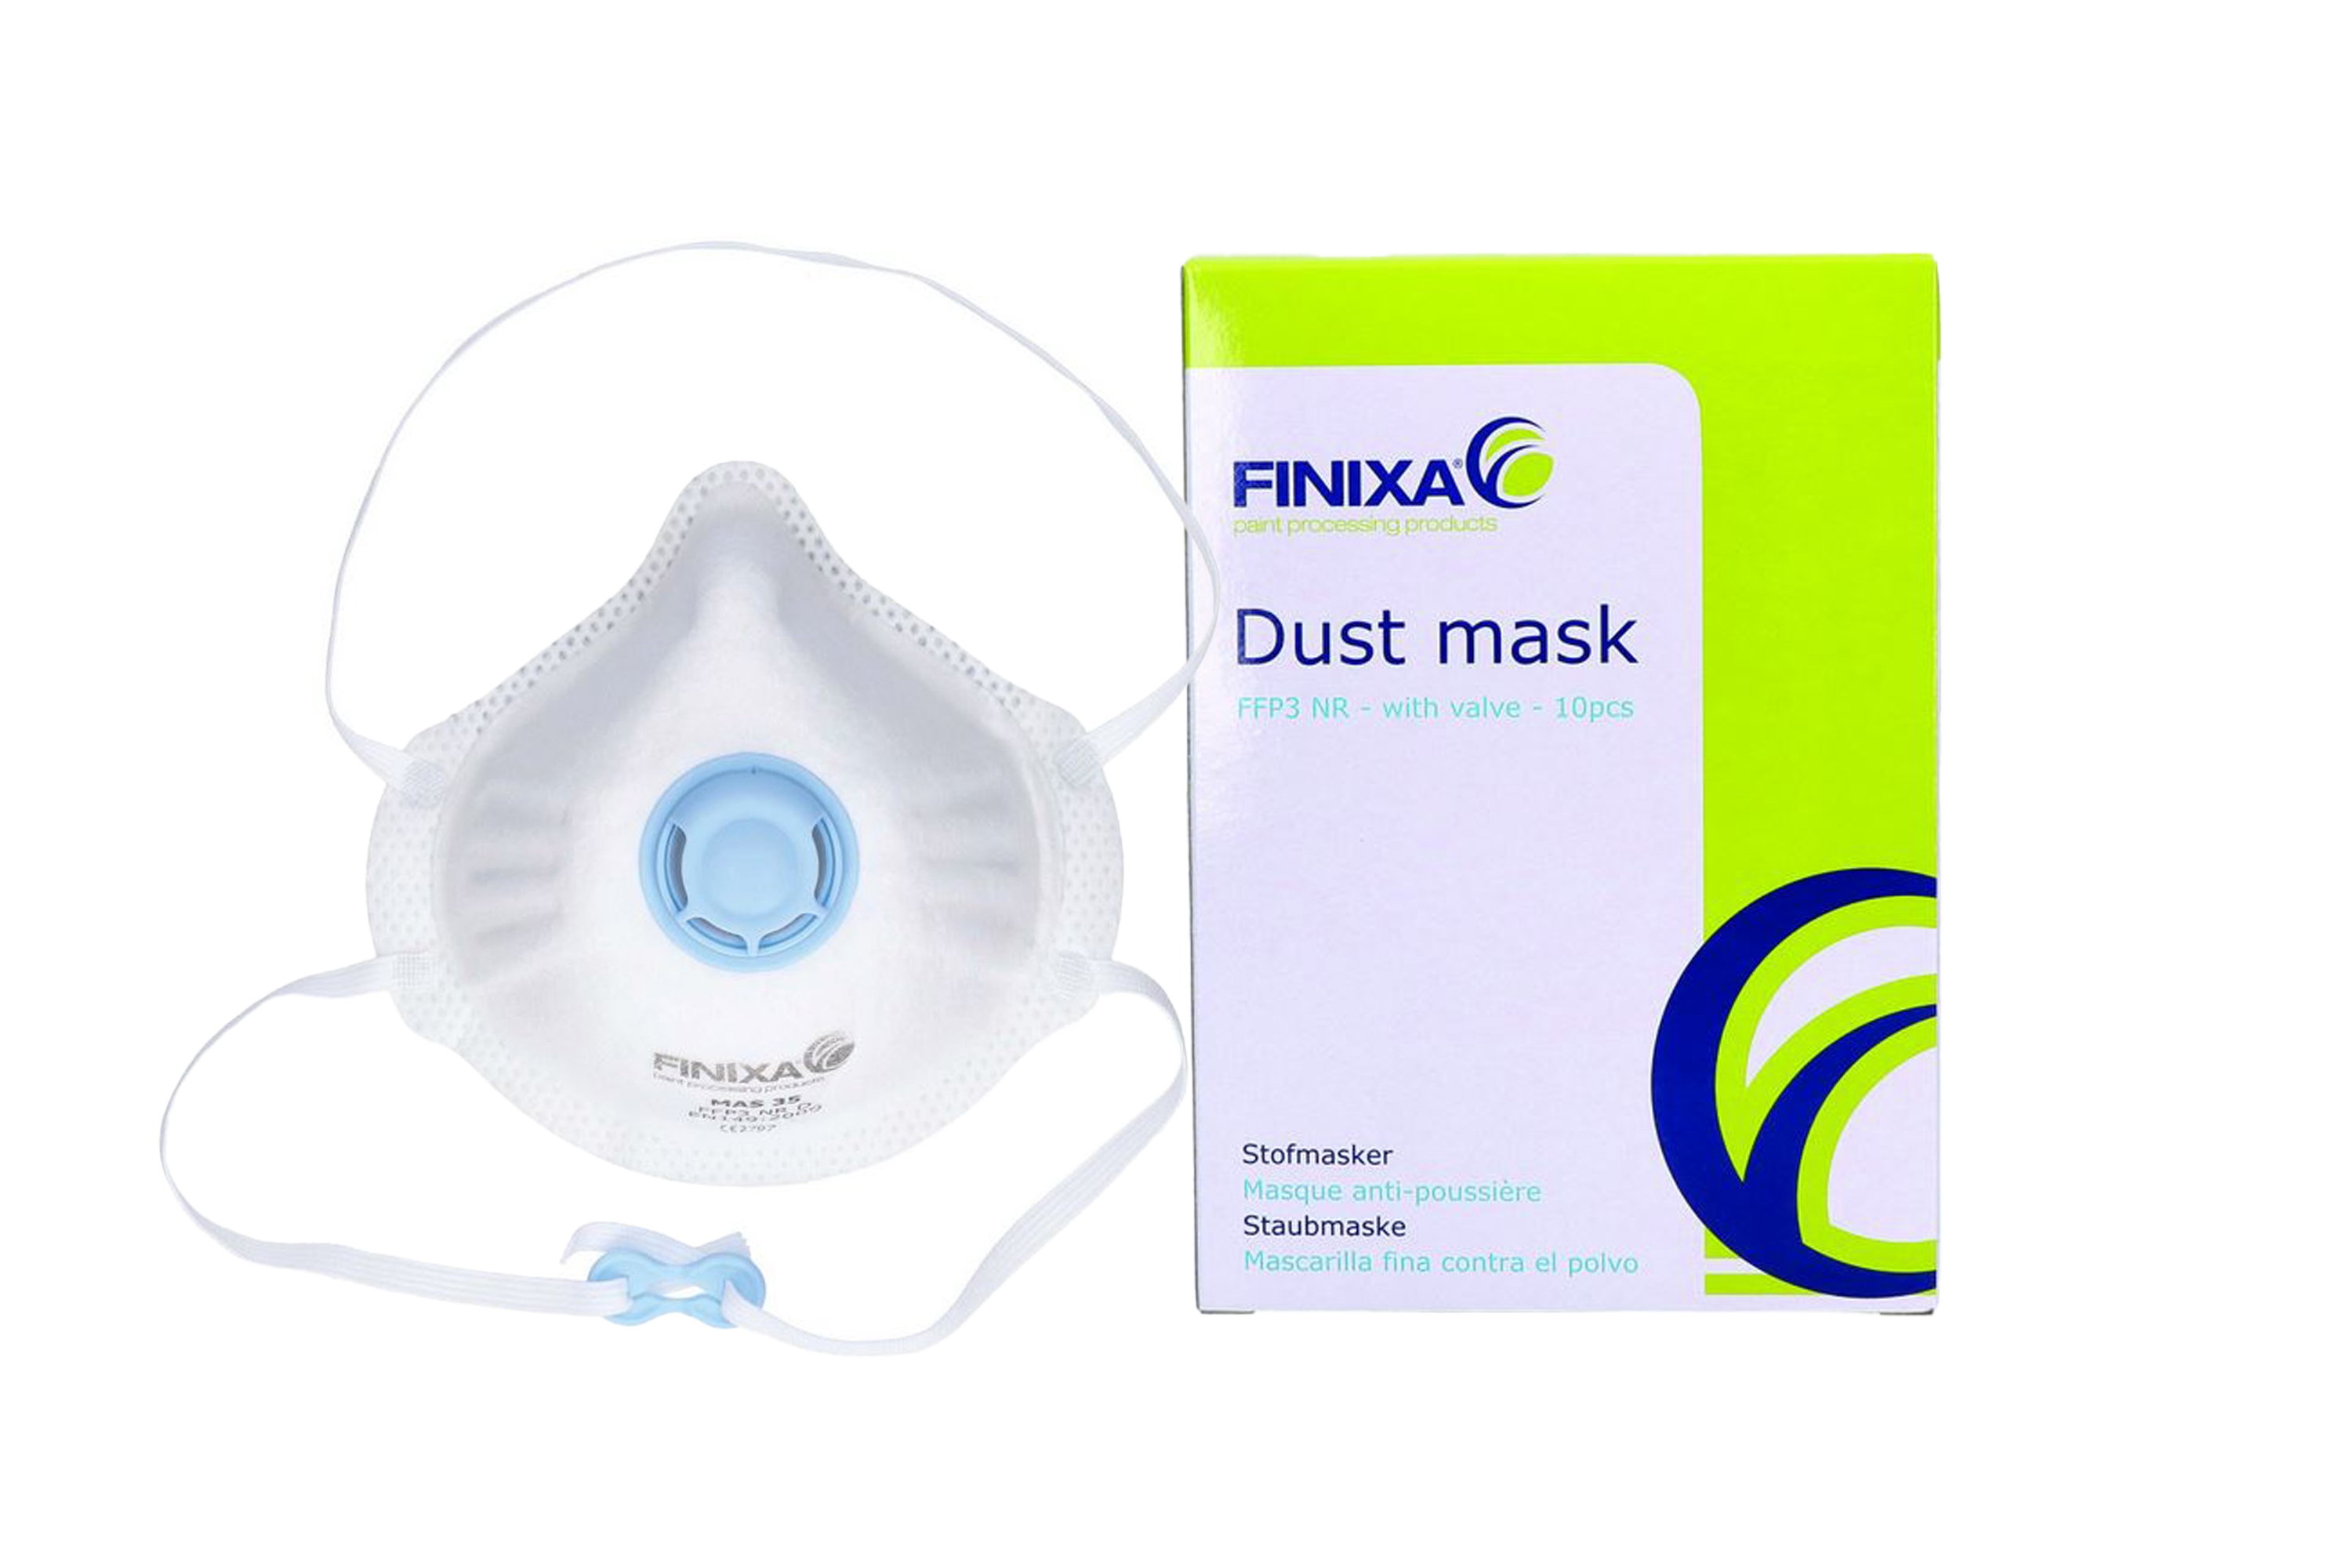 Abbildung Finixa FFP3 Feinstaubmaske mit Filter und Verpackung.